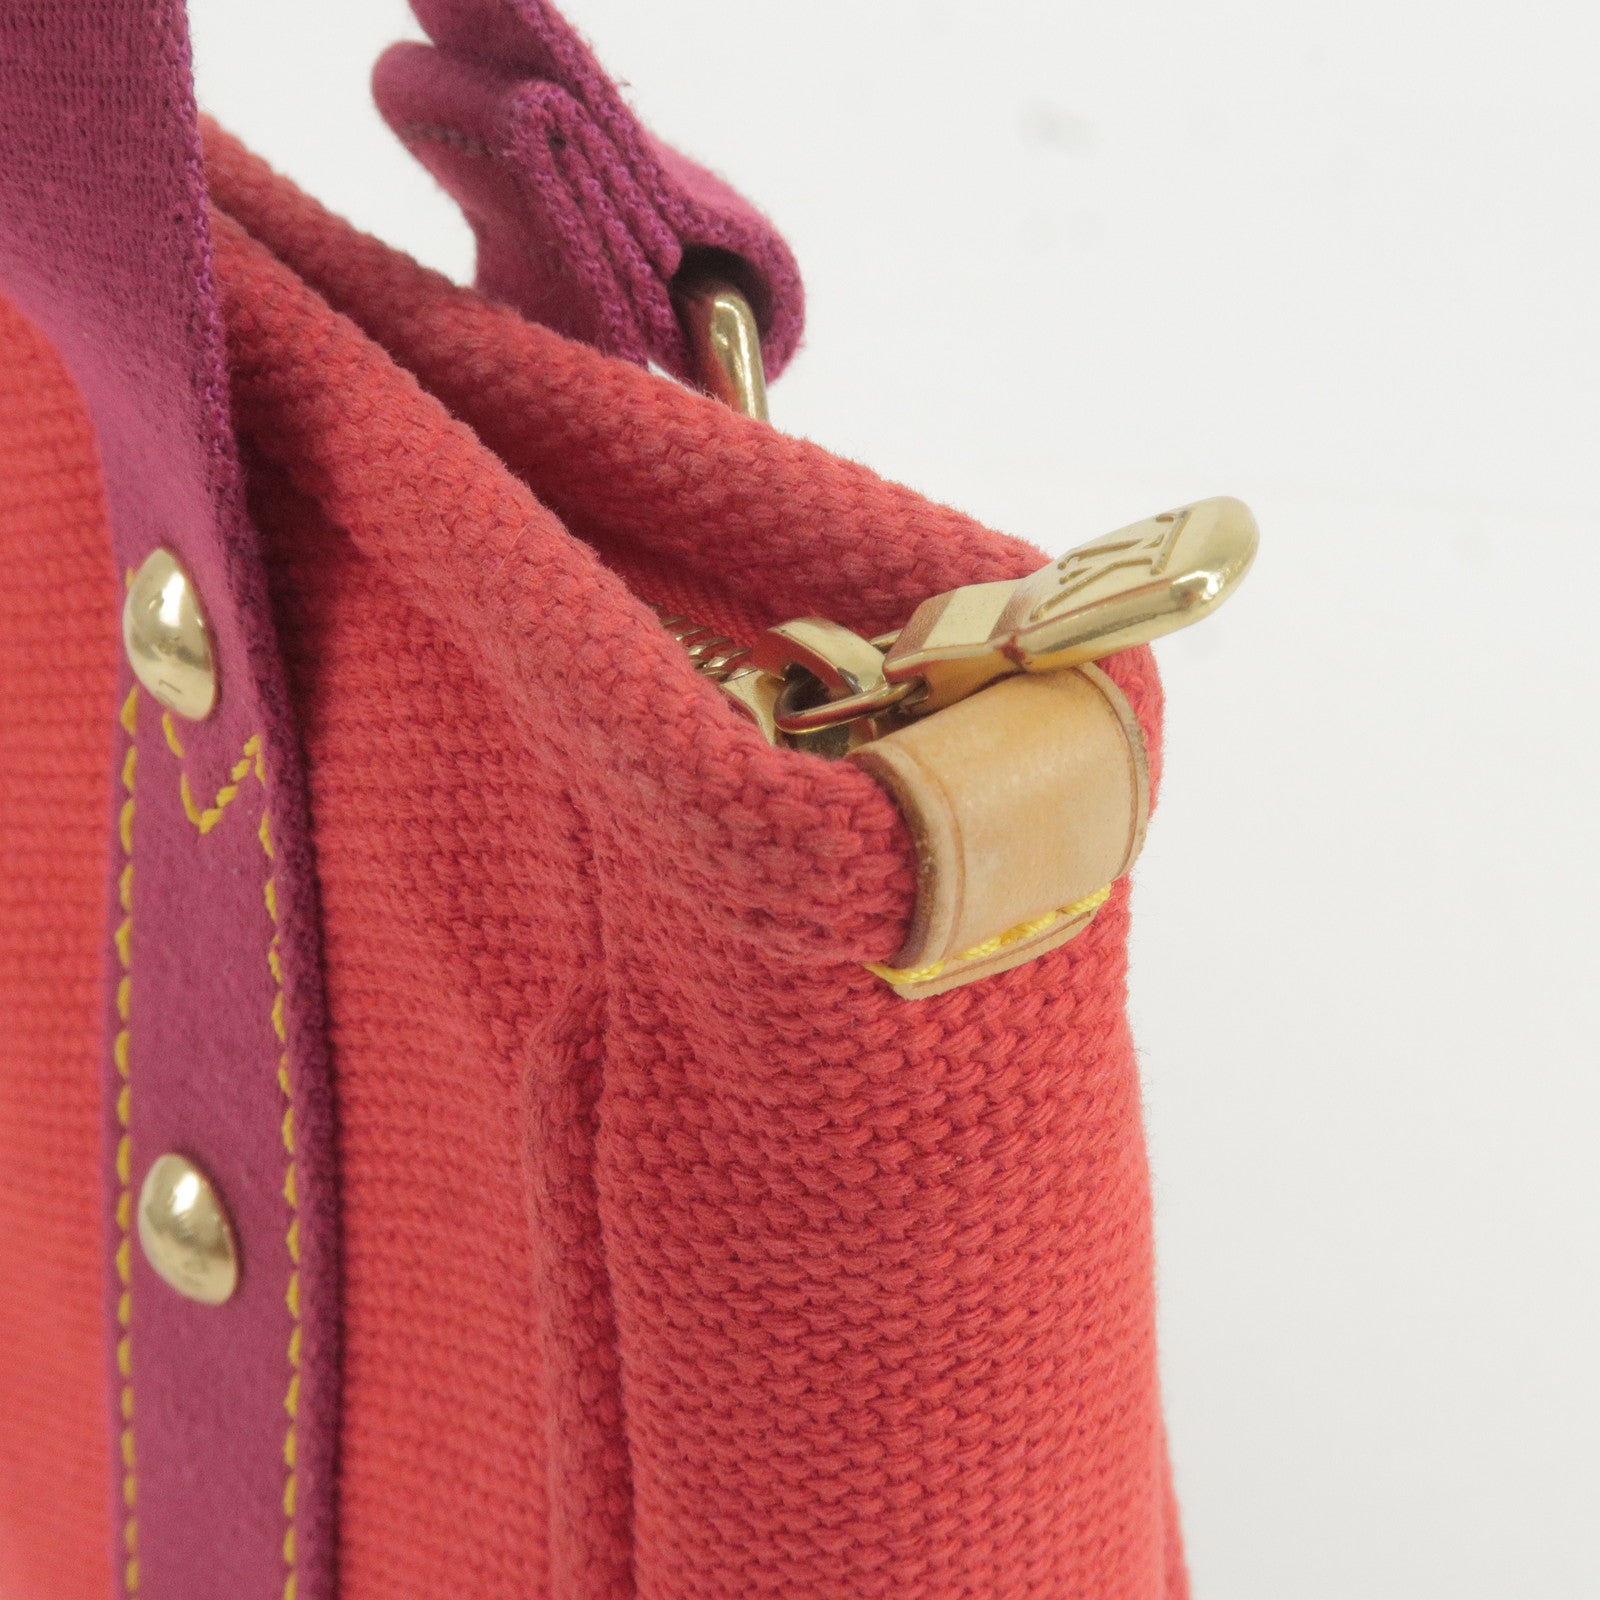 Cabas - Bag - Louis Vuitton Lockme Mini Backpack - M40037 – Louis